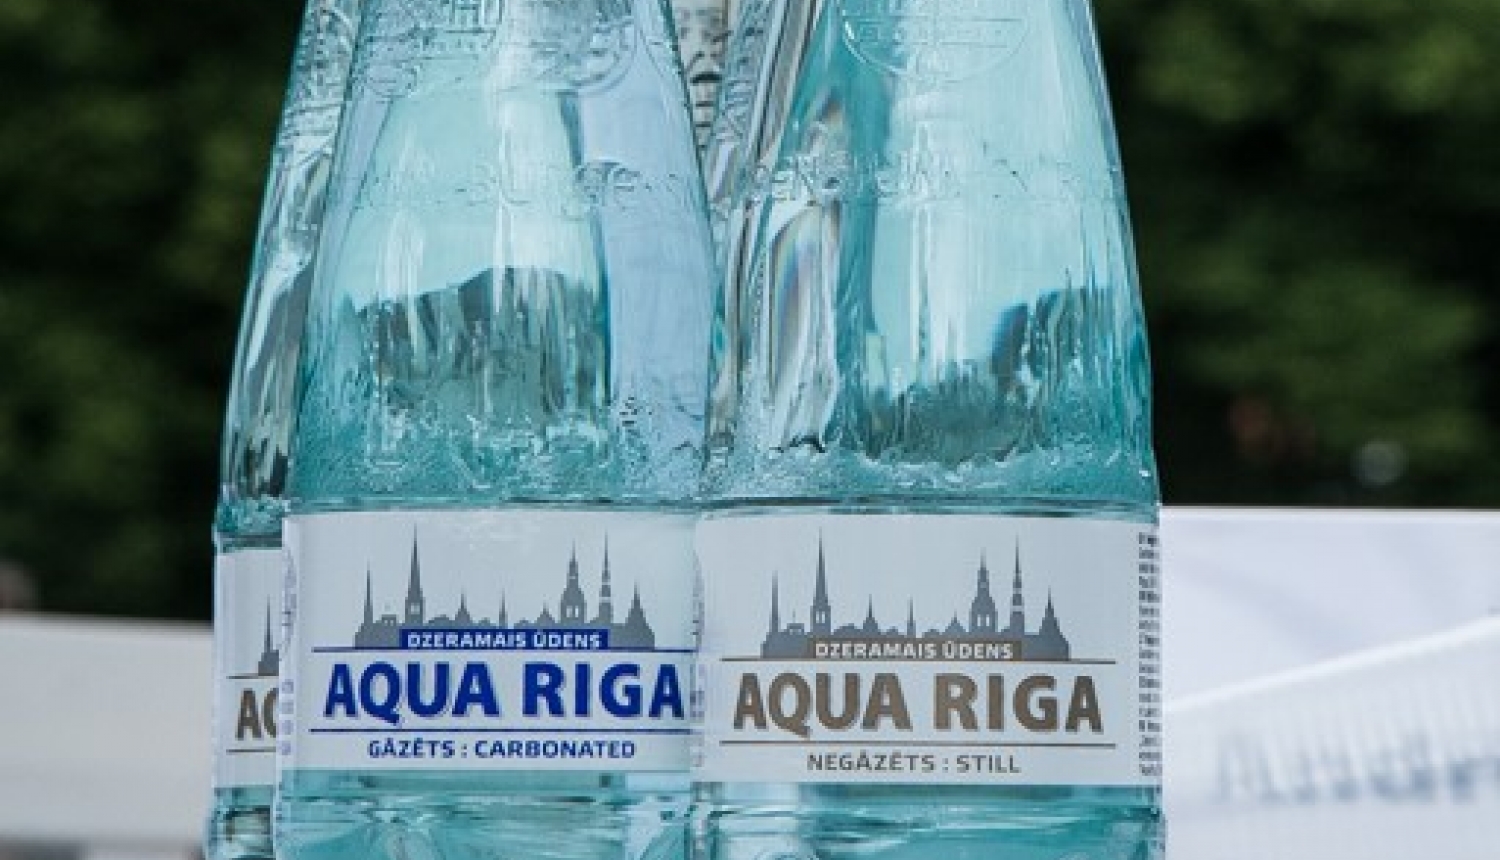 Ūdens pudeles "Aqua Rīga"